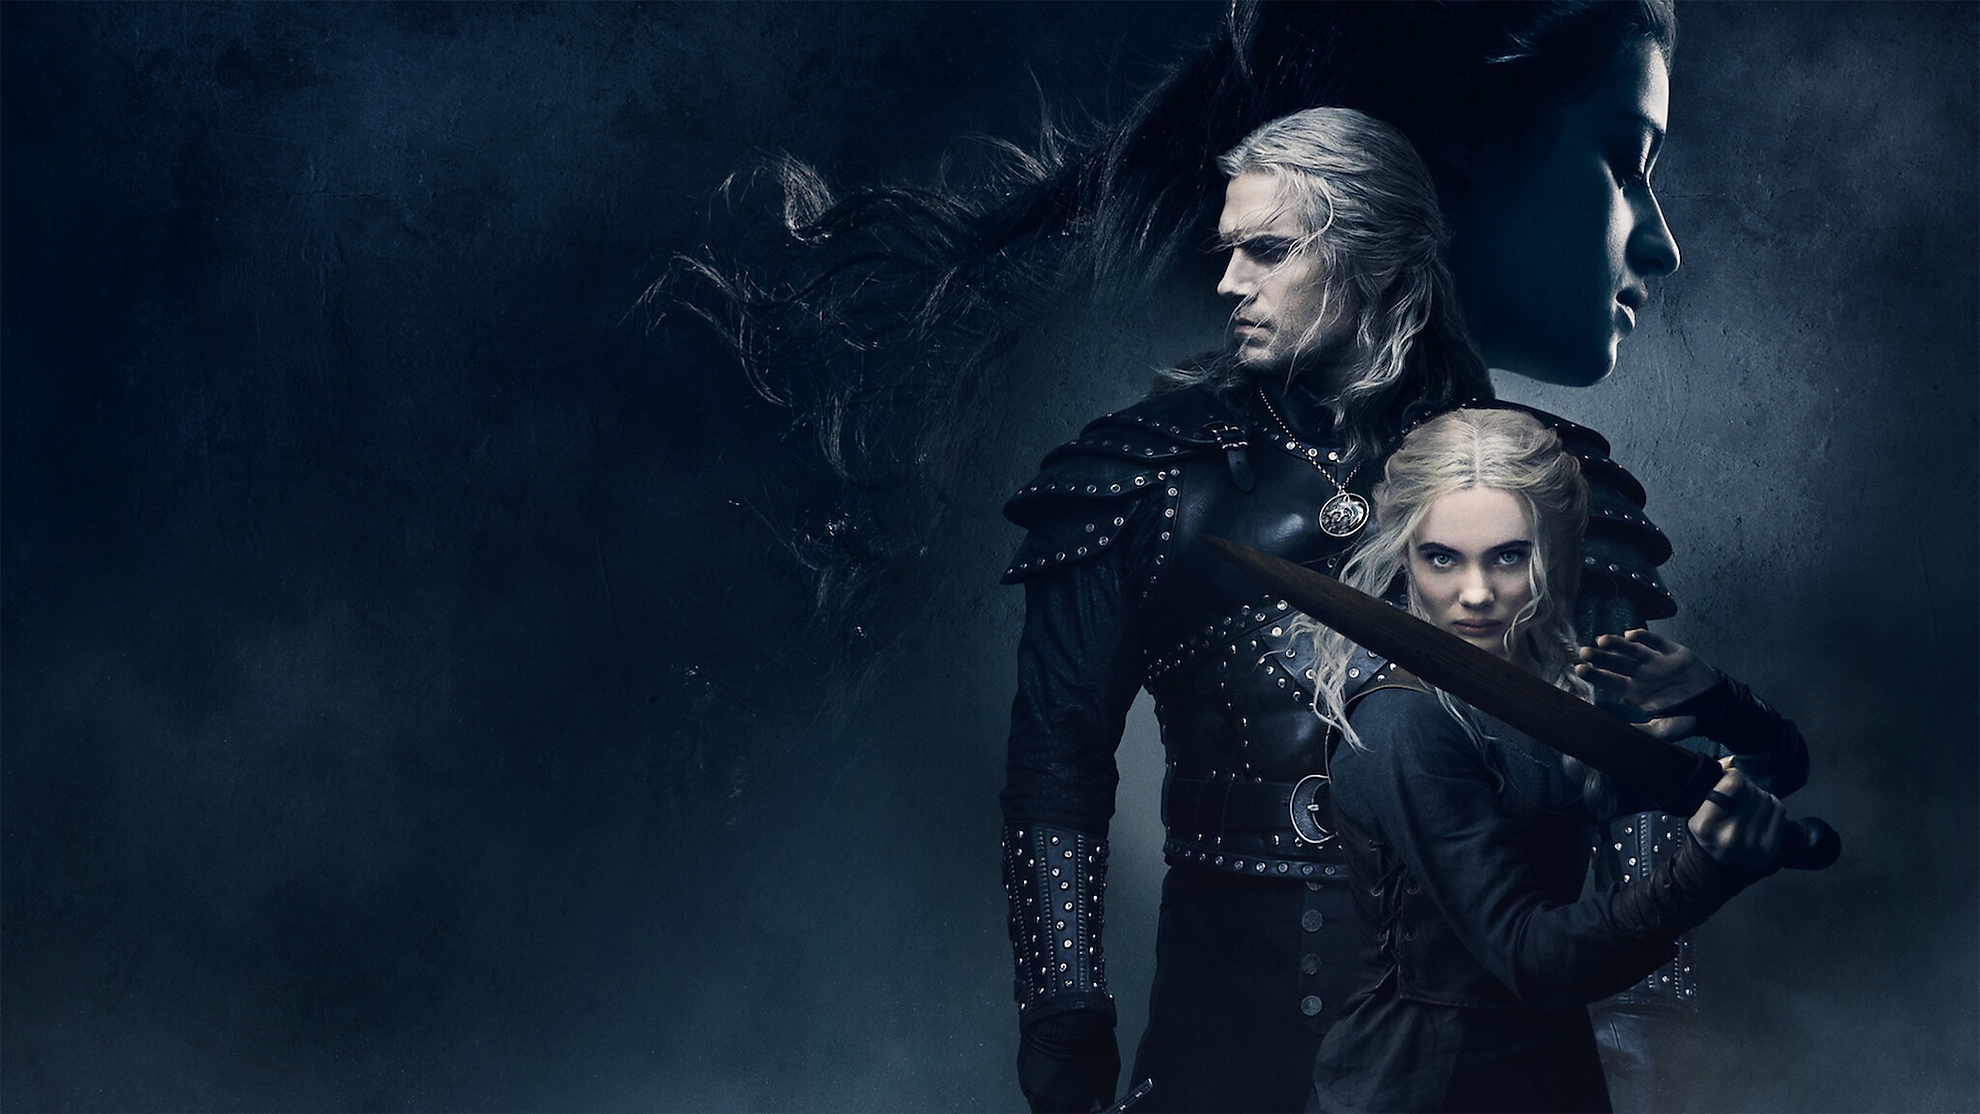 bag kulisserne på The Witcher med Henry Cavill som Geralt af Rivia